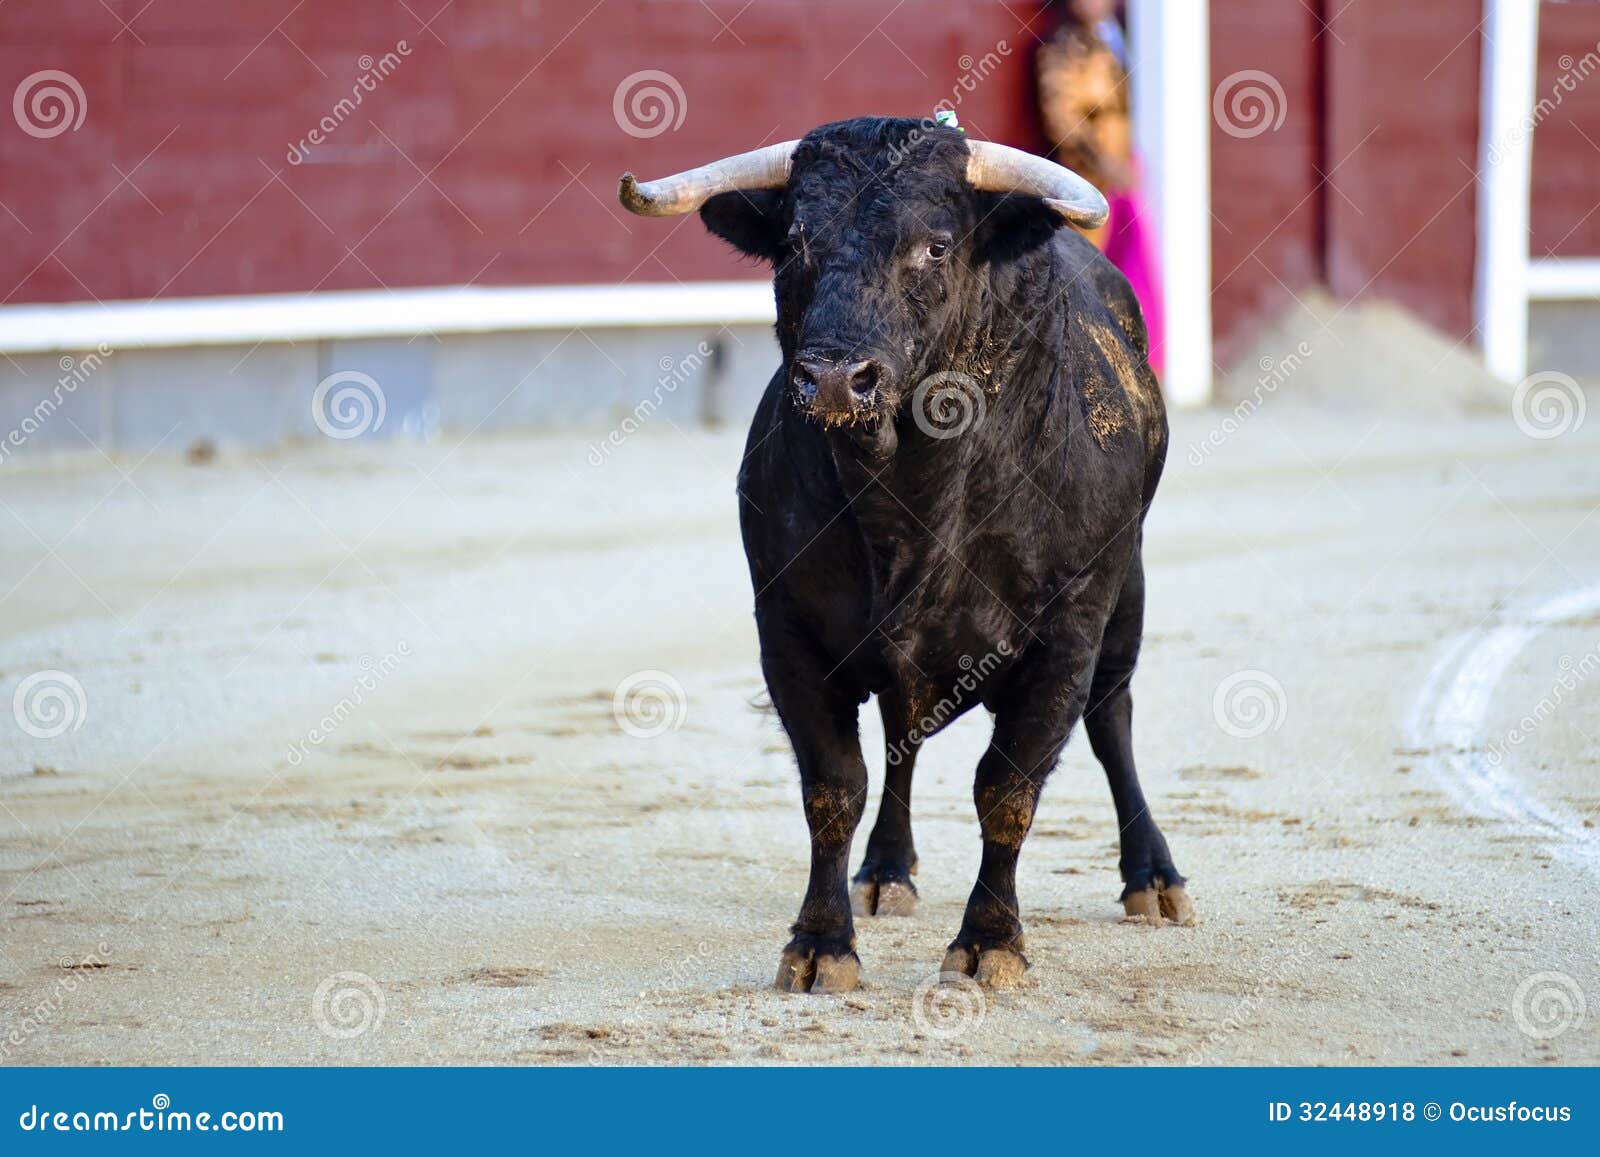 bullfighting. spanish fiesta